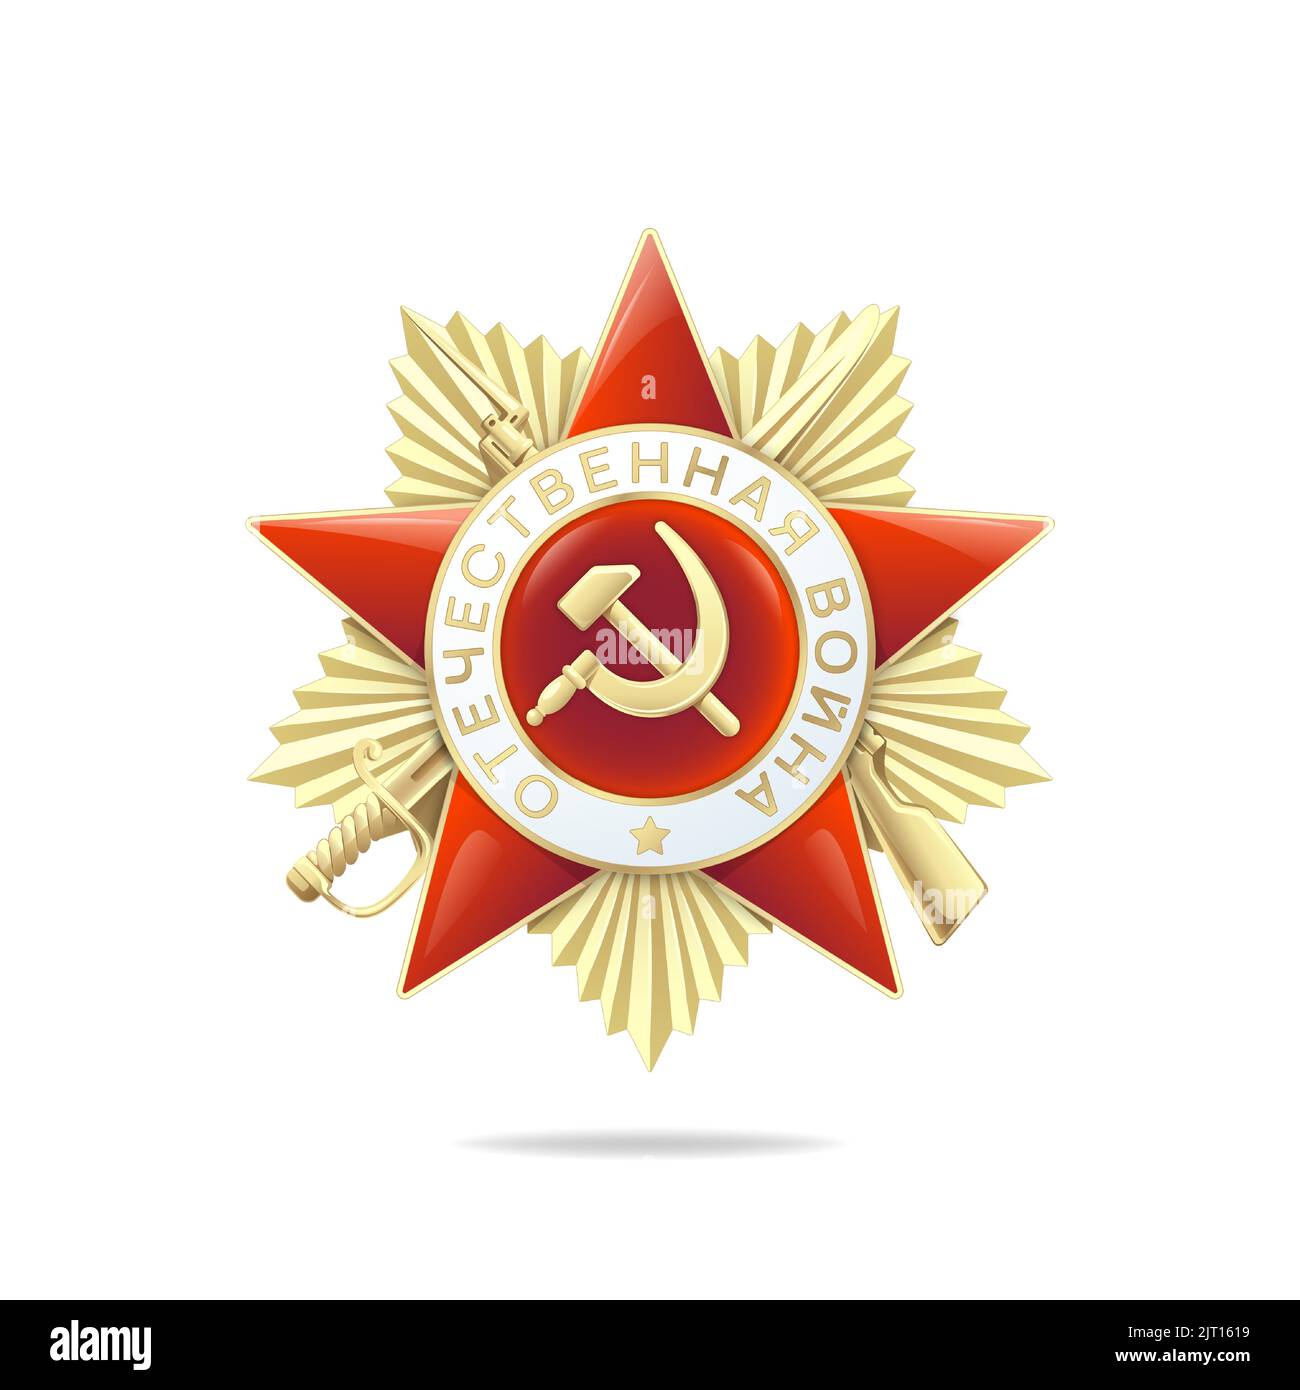 L'ordre soviétique de la Grande Guerre patriotique est isolé sur fond blanc. Traduction de l'inscription - 'guerre patriotique' Illustration de Vecteur